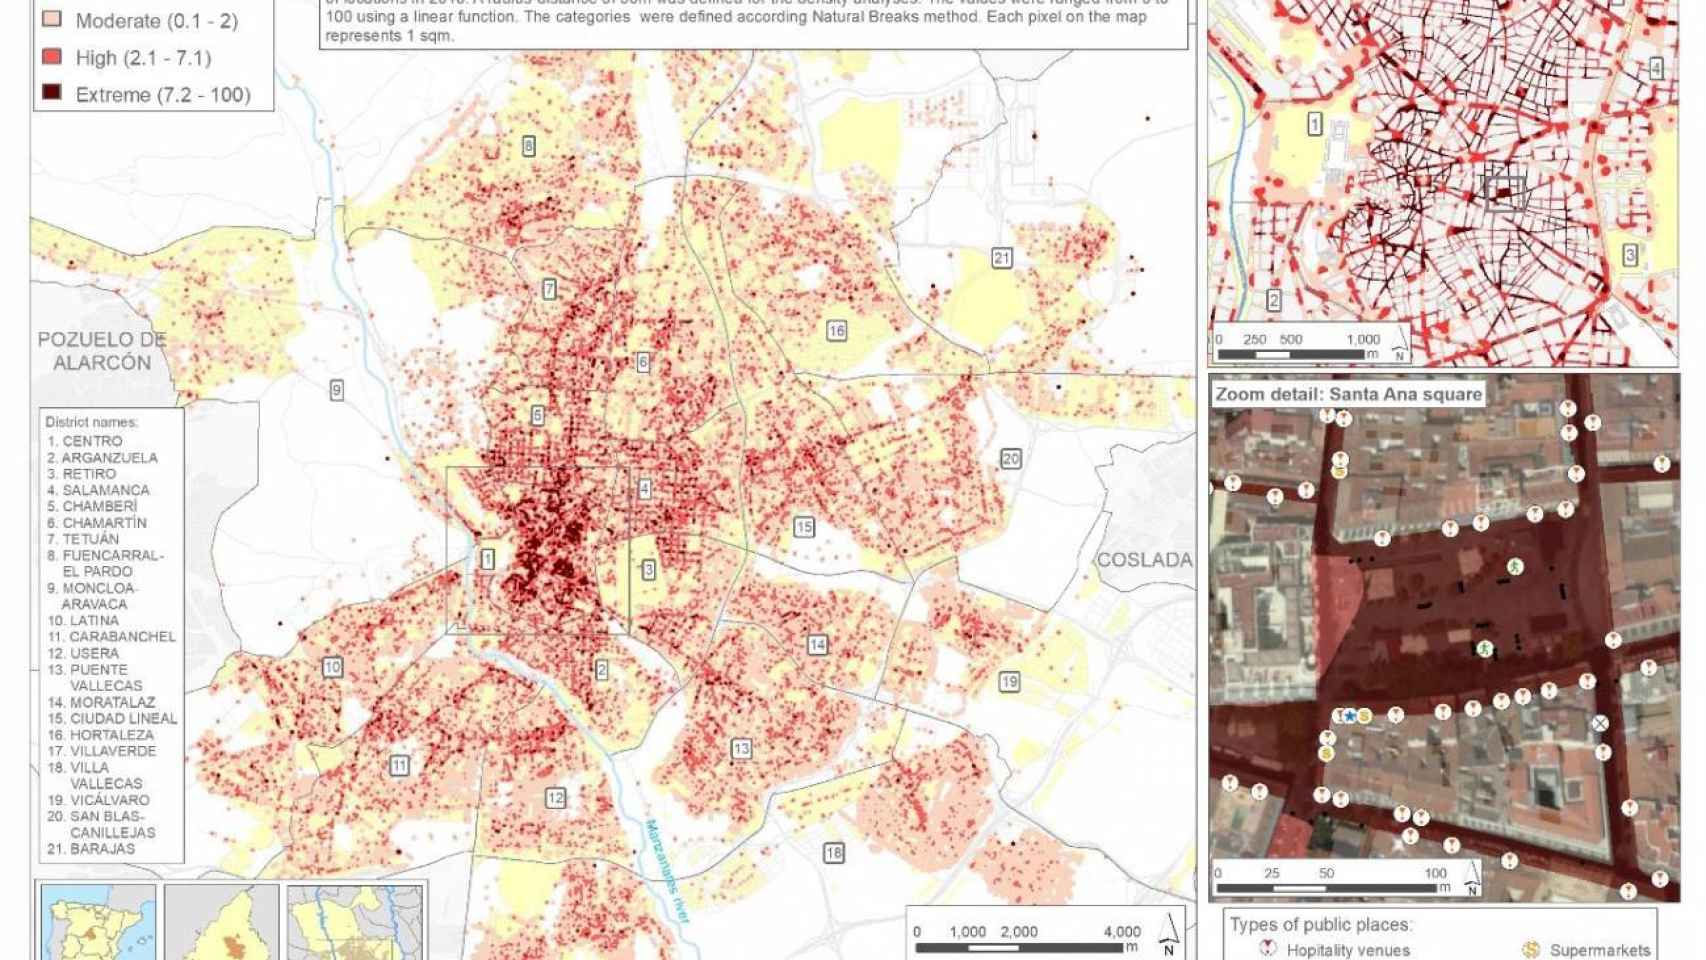 Presencia de colillas de tabaco en las calles de Madrid: el 73 % de los espacios públicos presentan estos residuos. Hay diferencias en la exposición entre barrios (en rojo, alta concentración).